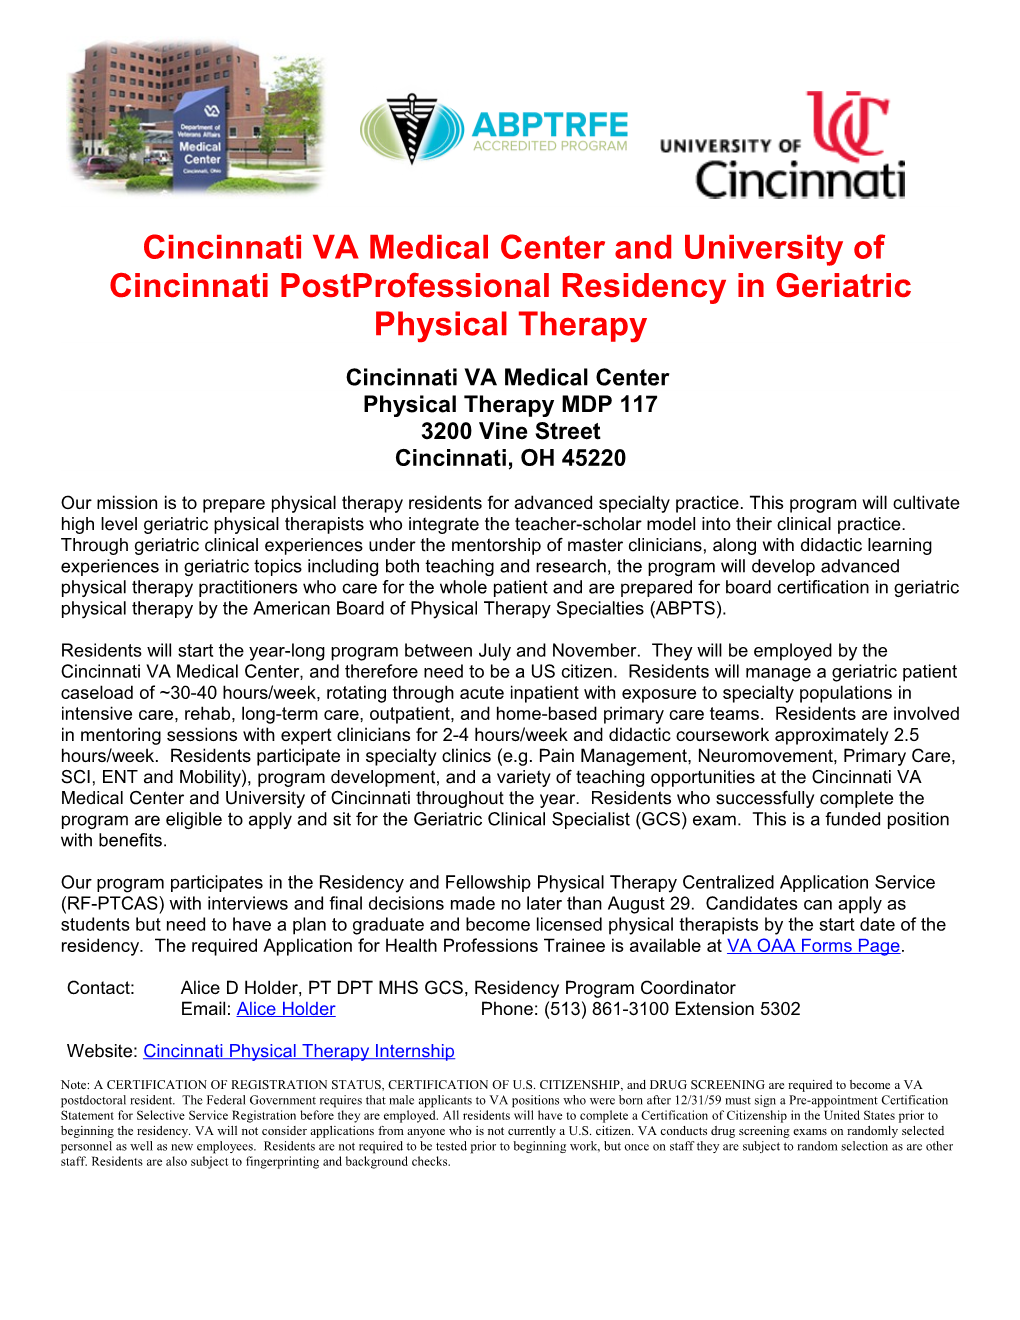 Cincinnati VA Medical Center and University of Cincinnati Postprofessional Residency In